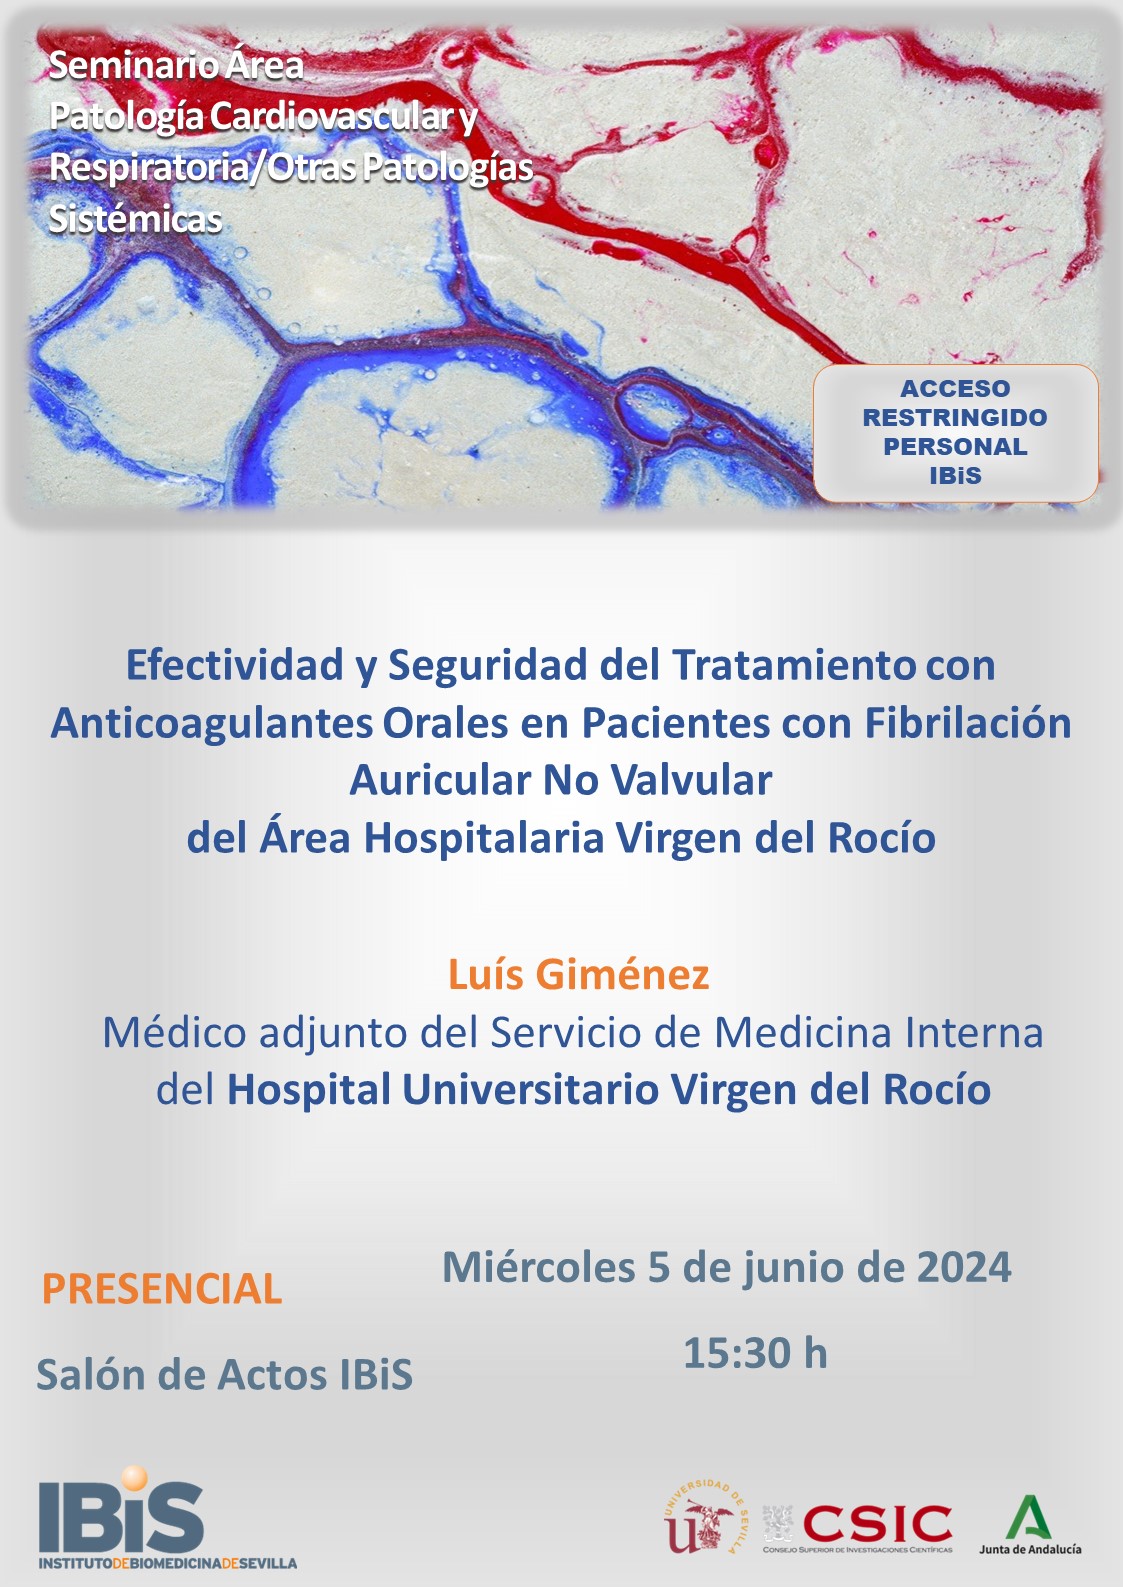 Poster: Efectividad y Seguridad del Tratamiento con Anticoagulantes Orales en Pacientes con Fibrilación Auricular No Valvular del Área Hospitalaria Virgen del Rocío